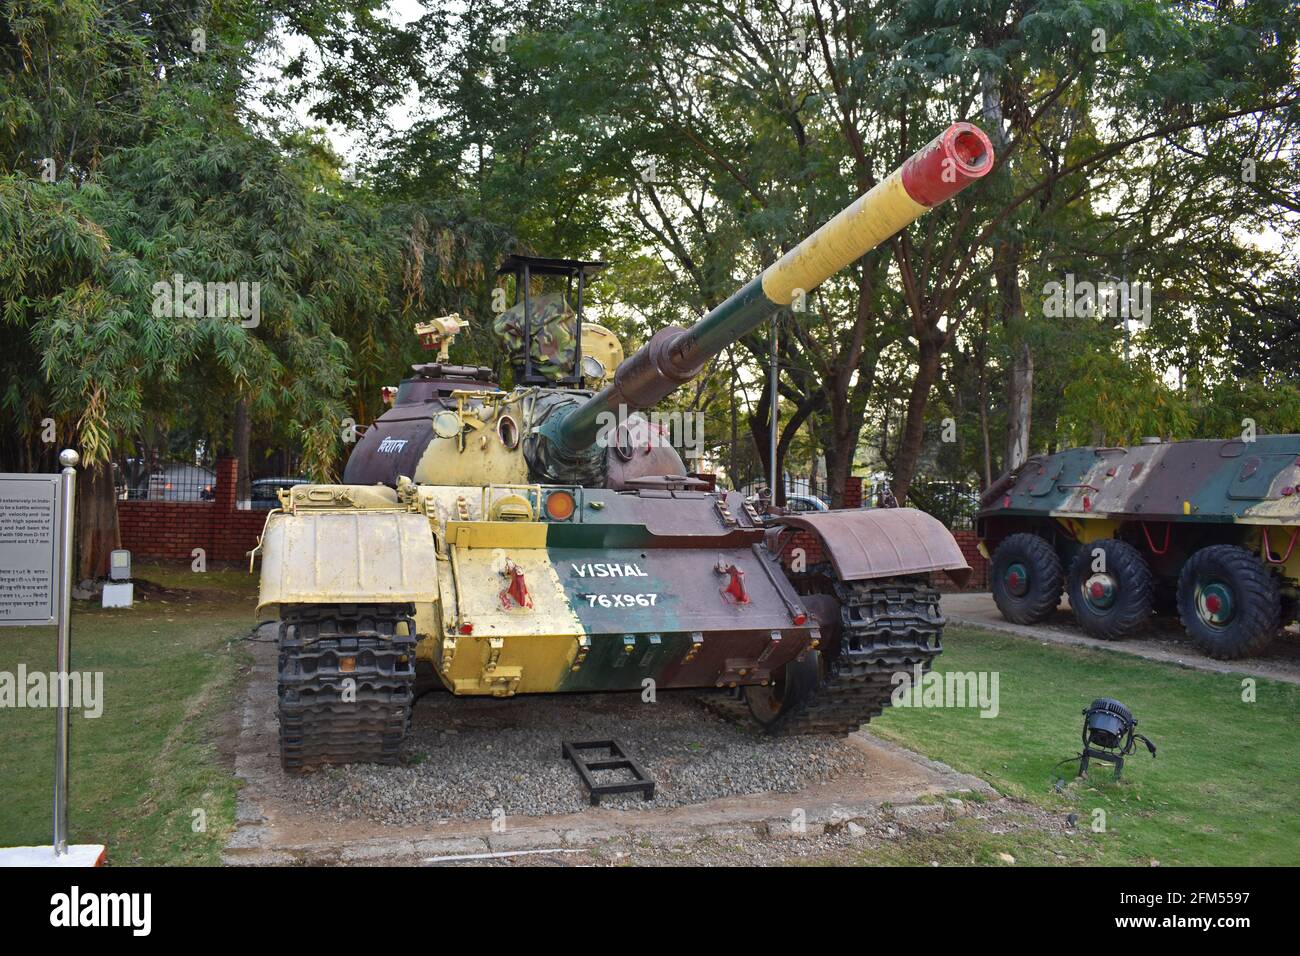 Main battle tank - Vishal 76X967 at Museum - National War Memorial Southern Command Pune, Maharashtra, India Stock Photo